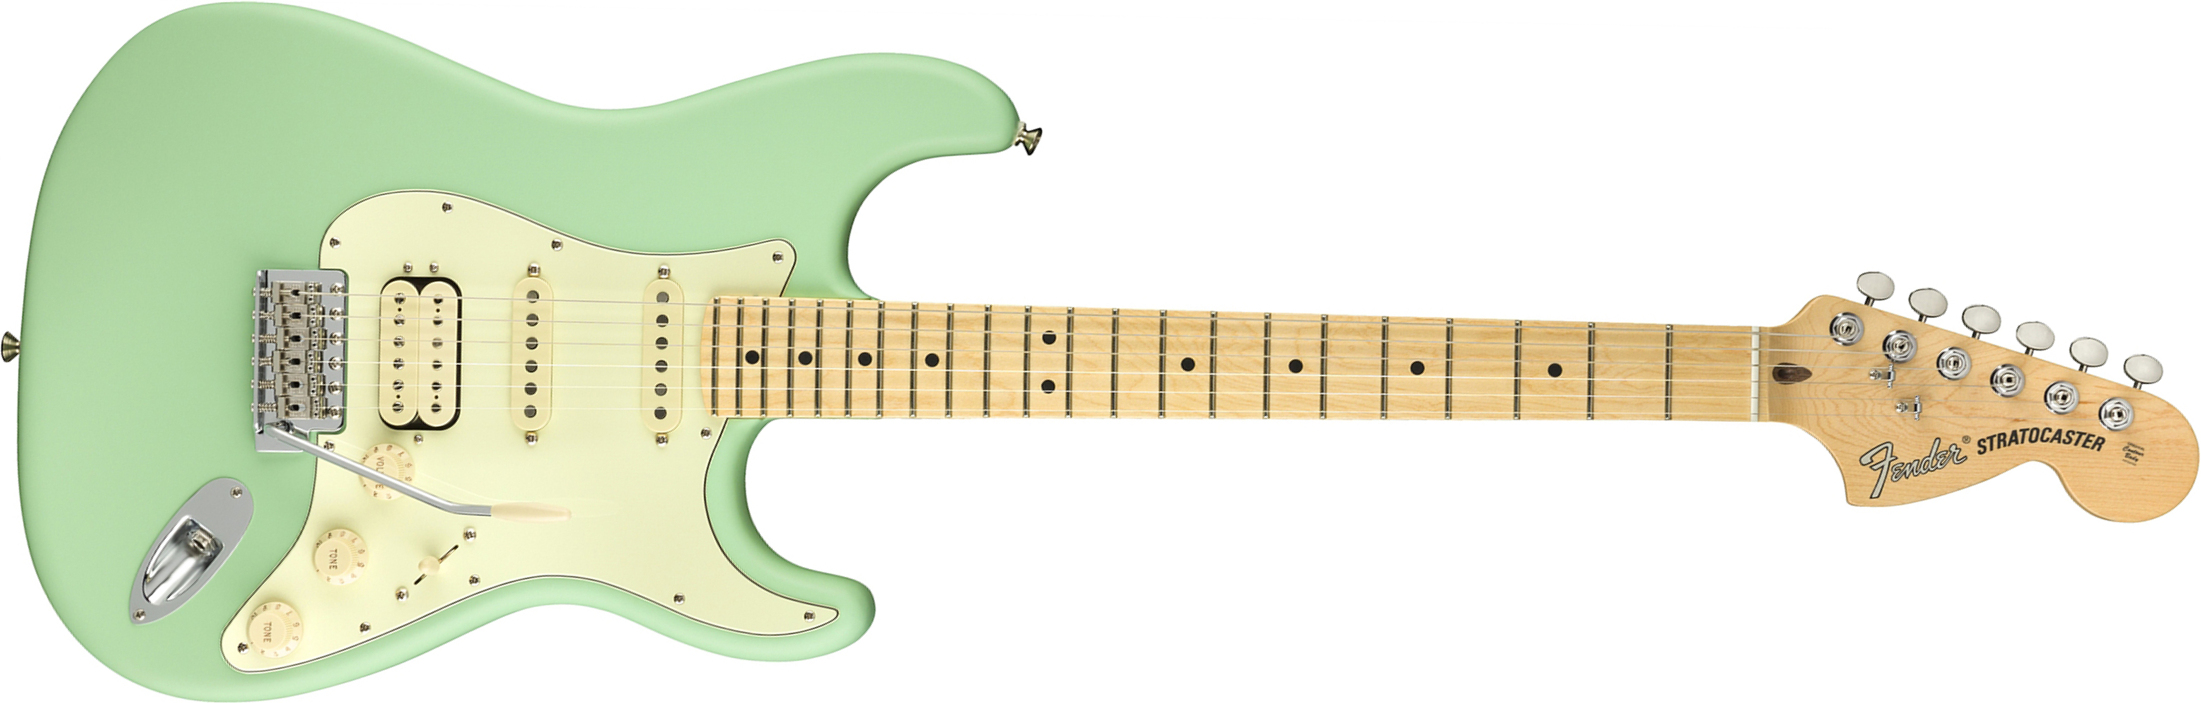 Fender Strat American Performer Usa Hss Mn - Satin Surf Green - Elektrische gitaar in Str-vorm - Main picture